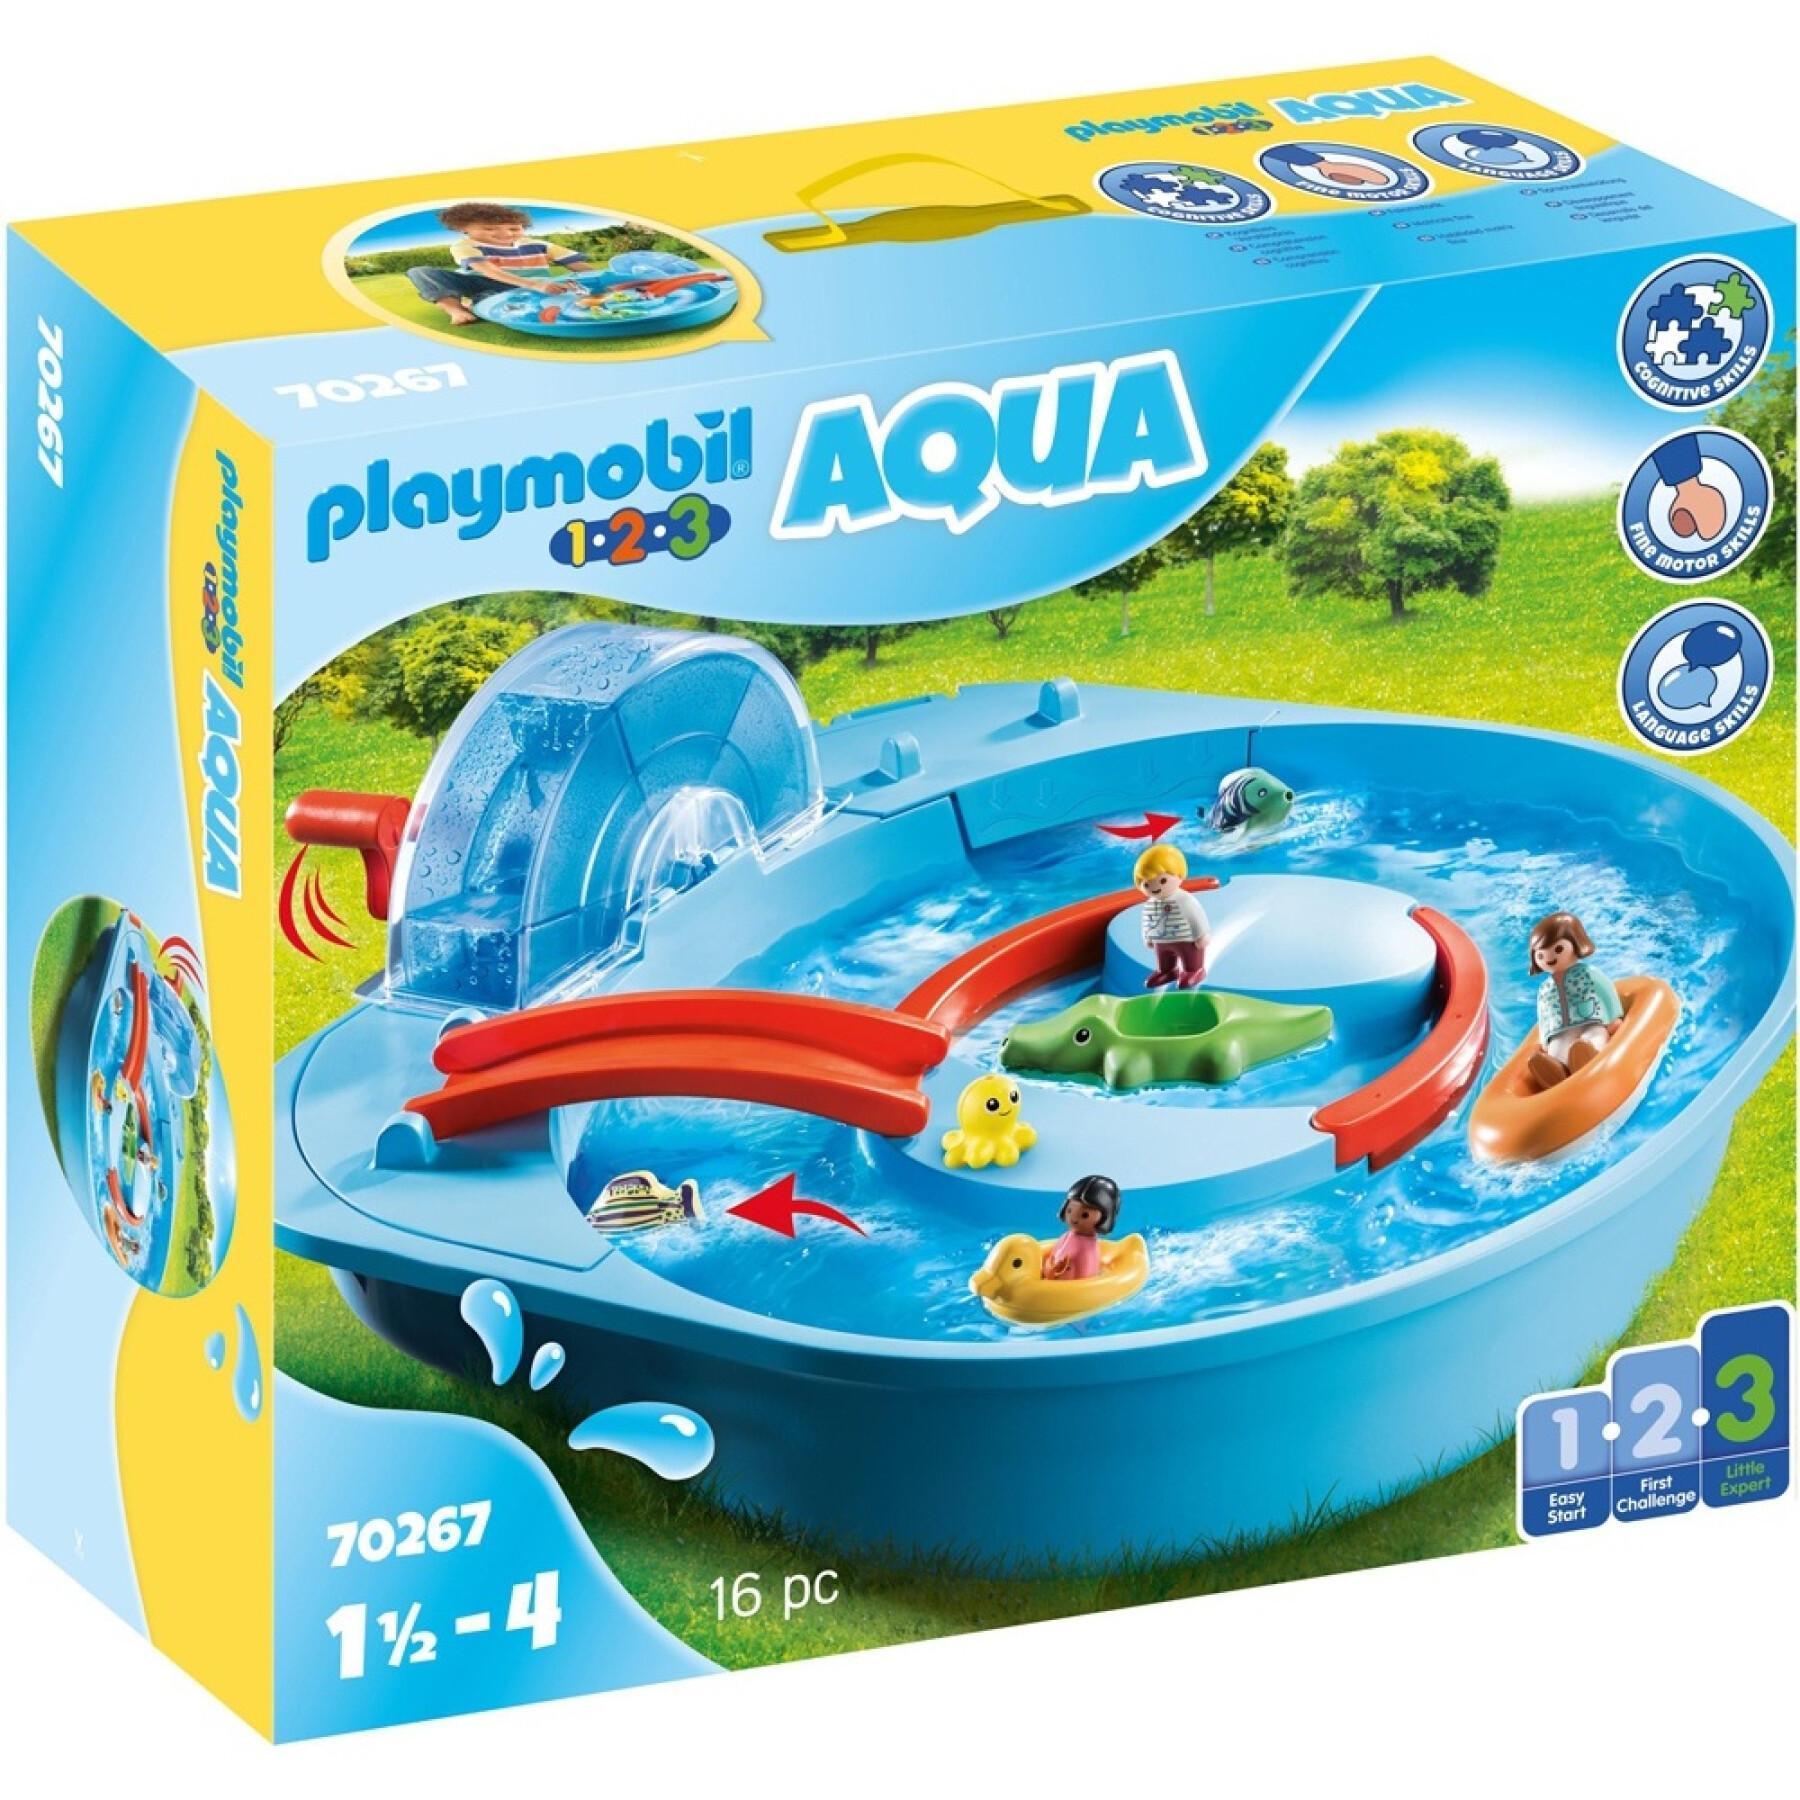 Jeux de constructionr parc aquatique Playmobil 1.2.3 - Jouets